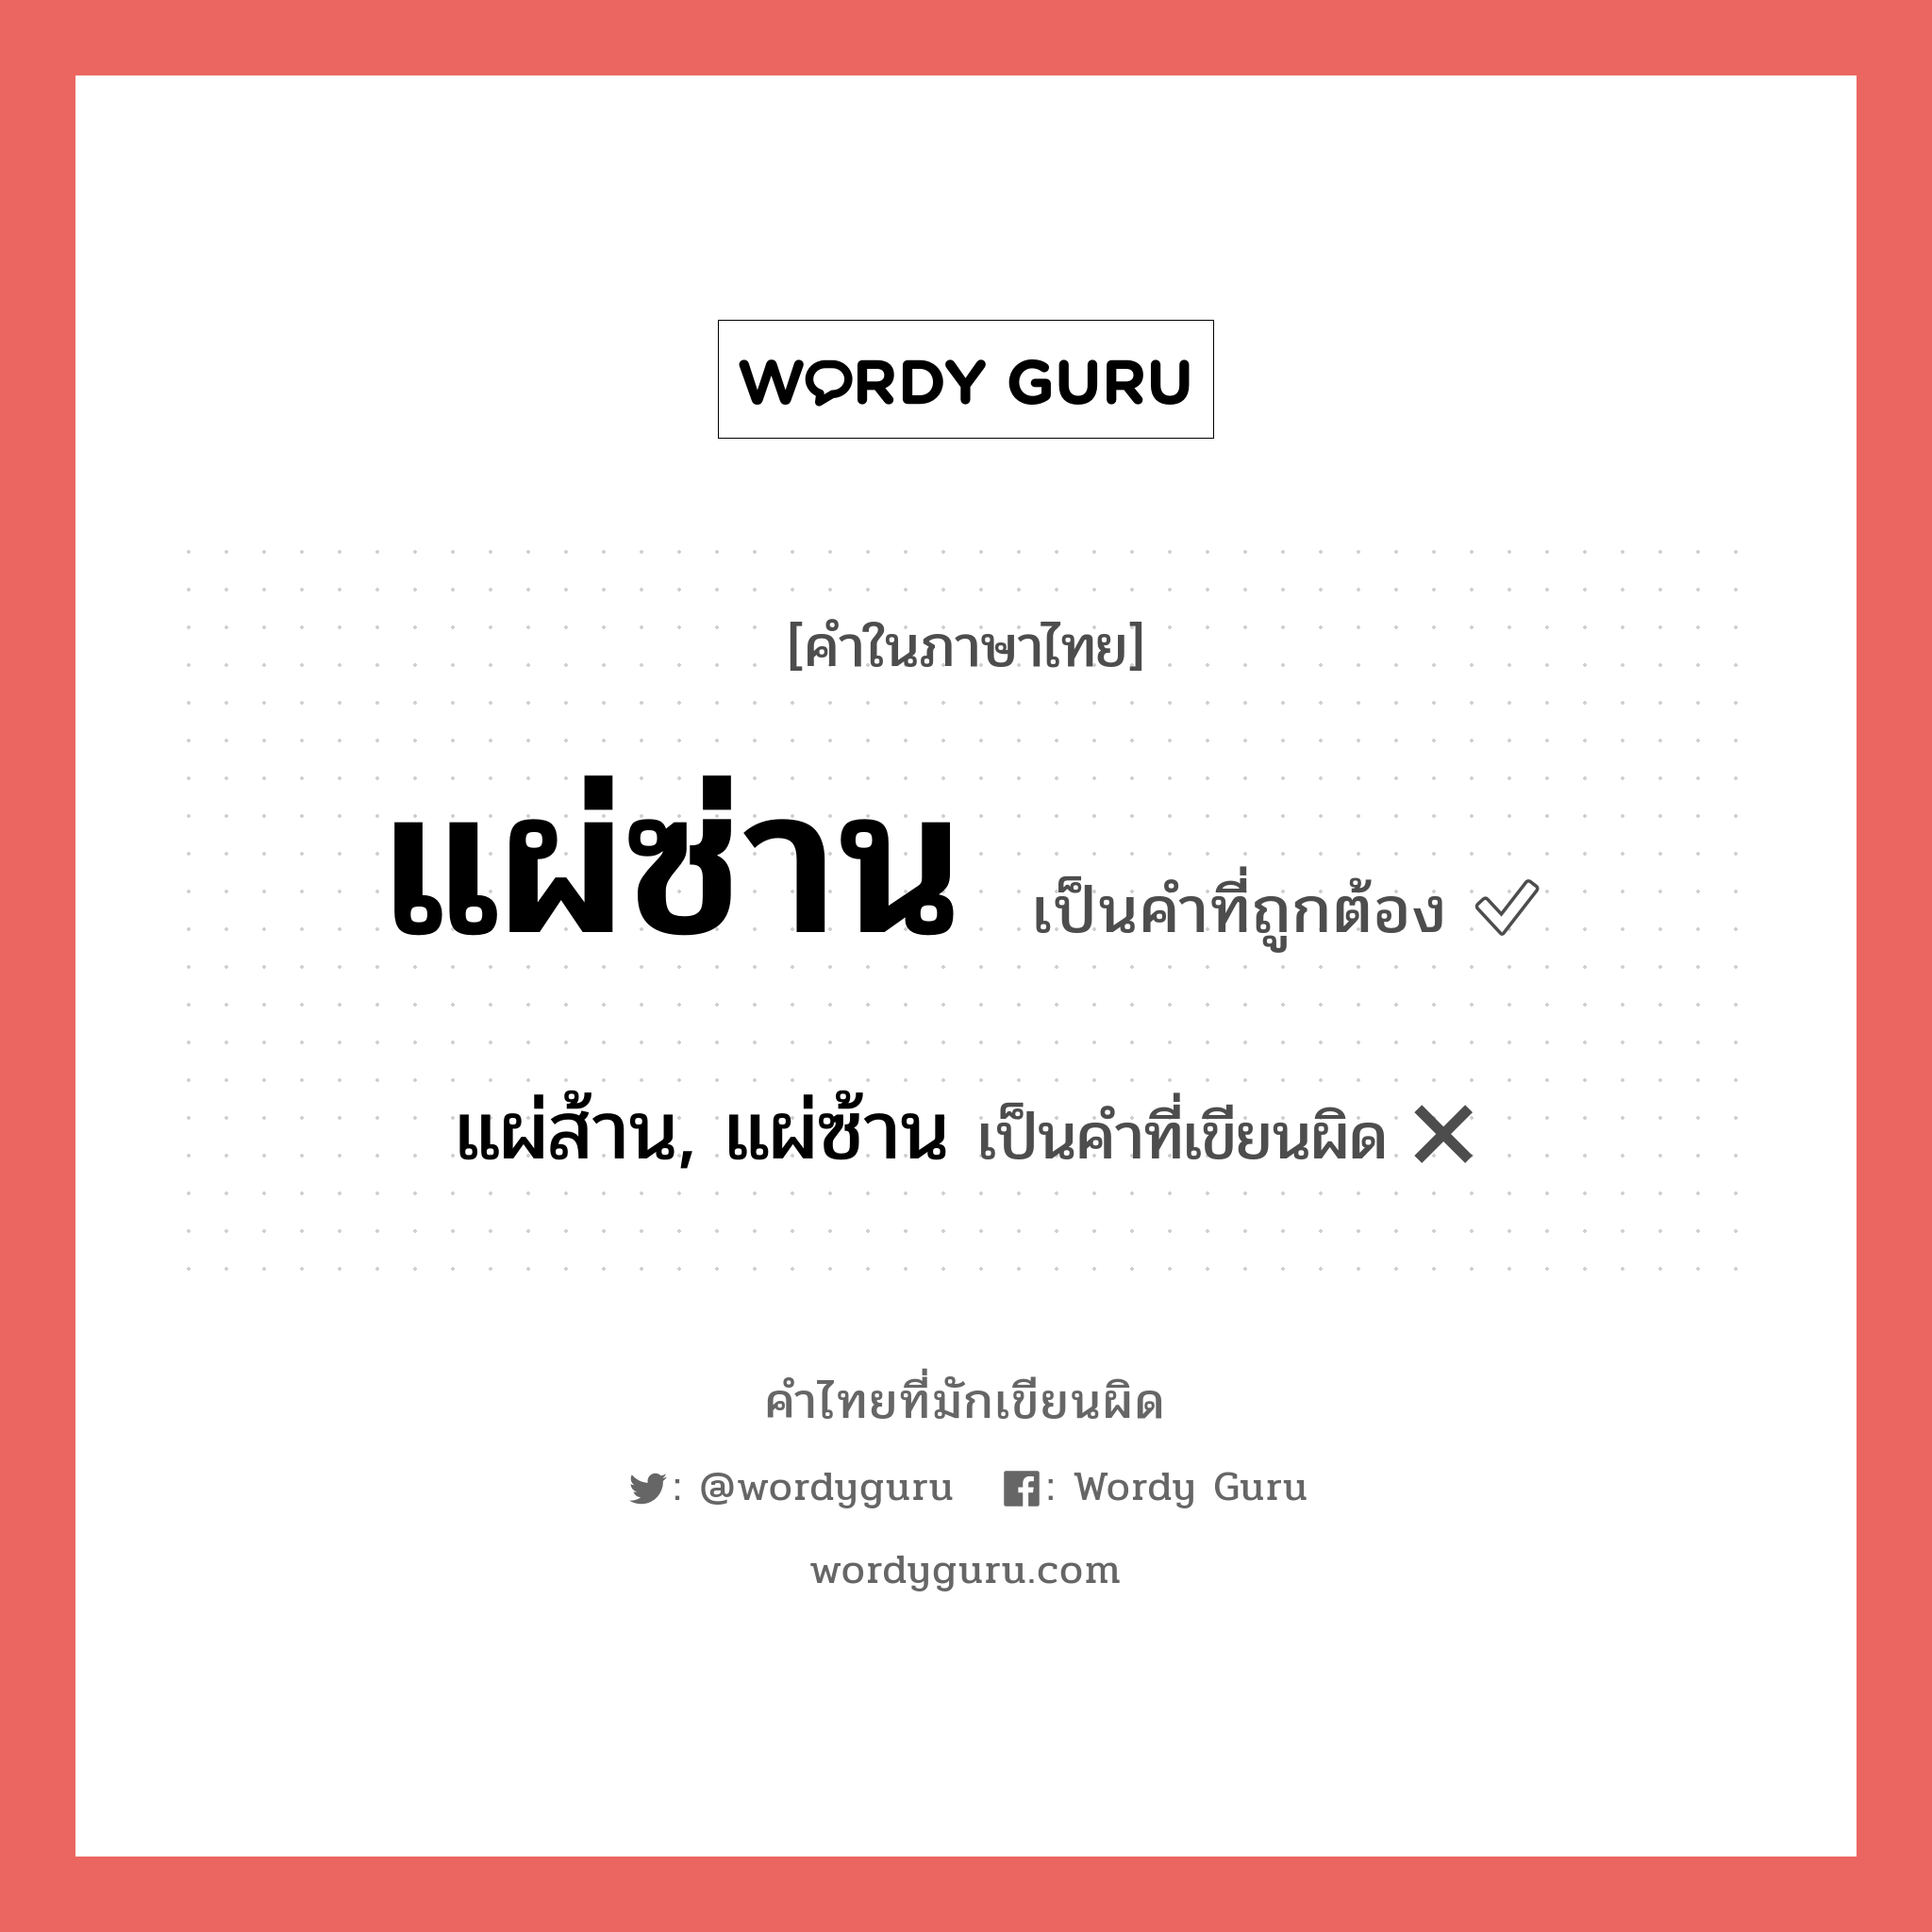 แผ่ส้าน, แผ่ซ้าน หรือ แผ่ซ่าน คำไหนเขียนถูก?, คำในภาษาไทยที่มักเขียนผิด แผ่ส้าน, แผ่ซ้าน คำที่ผิด ❌ แผ่ซ่าน